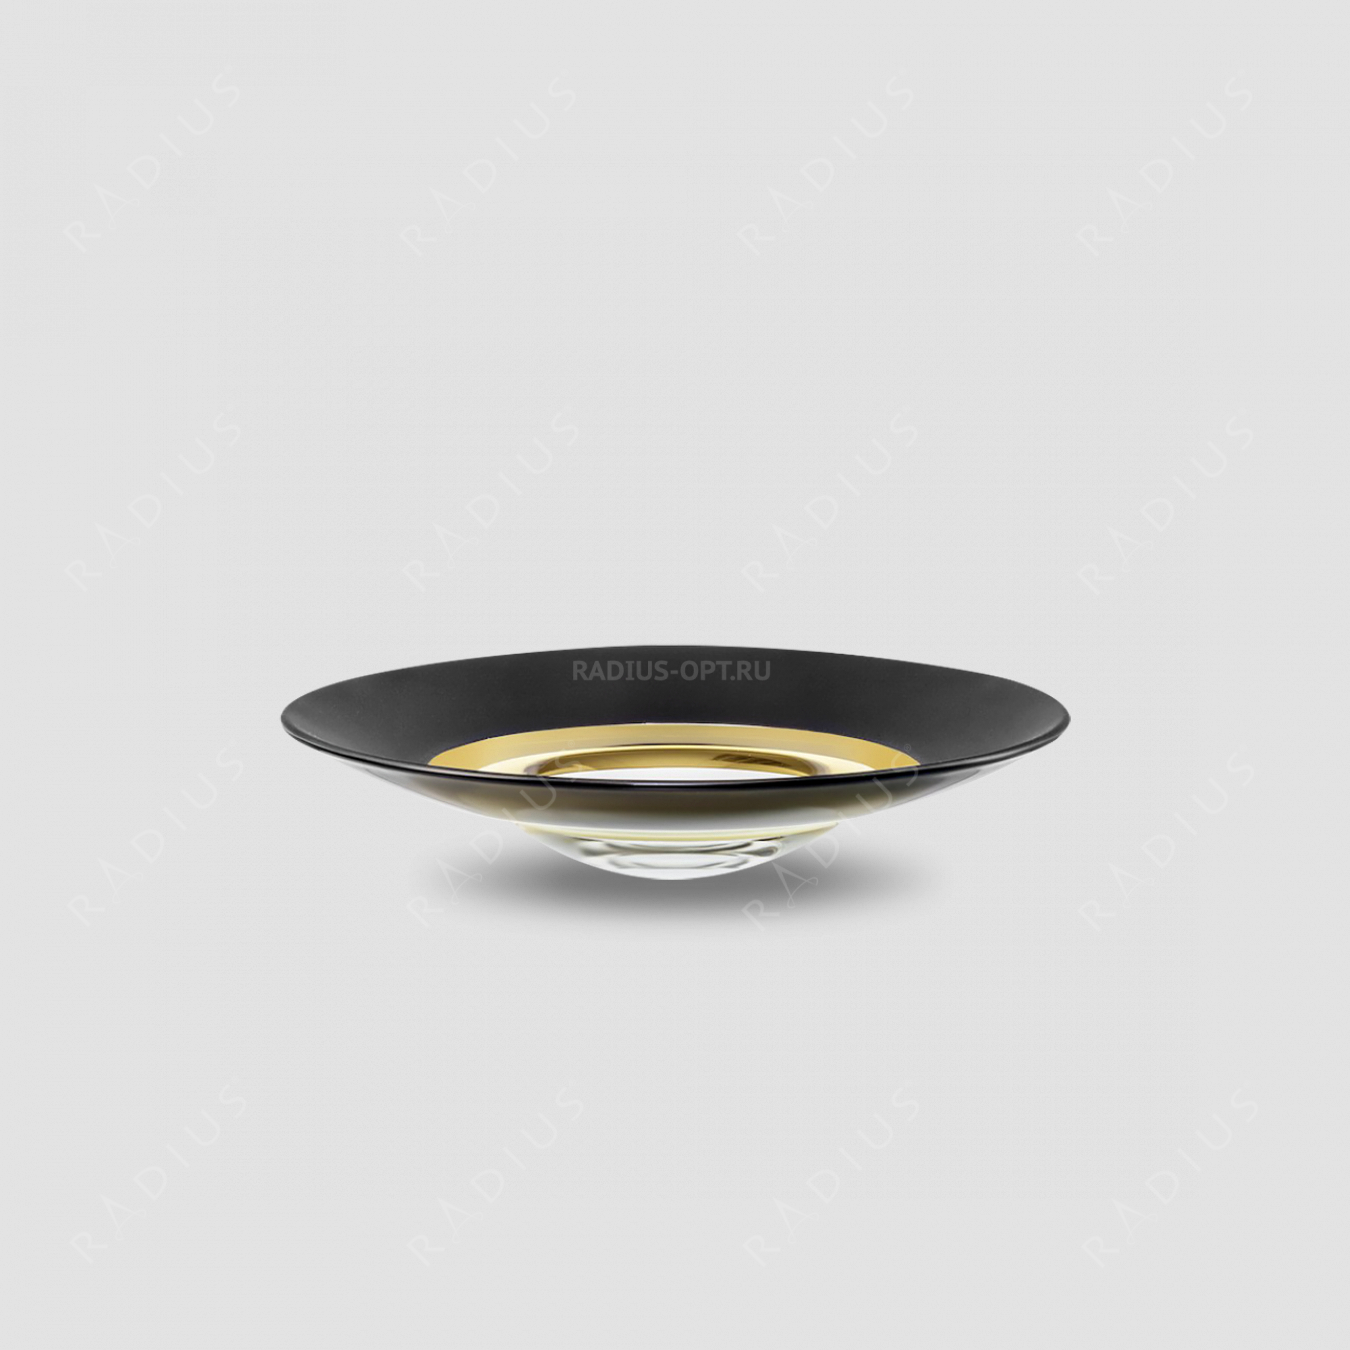 Тарелка глубокая Gold, диаметр: 35 см, материал: бессвинцовый хрусталь, цвет: черный/золото, серия Cosmo, EISCH, Германия